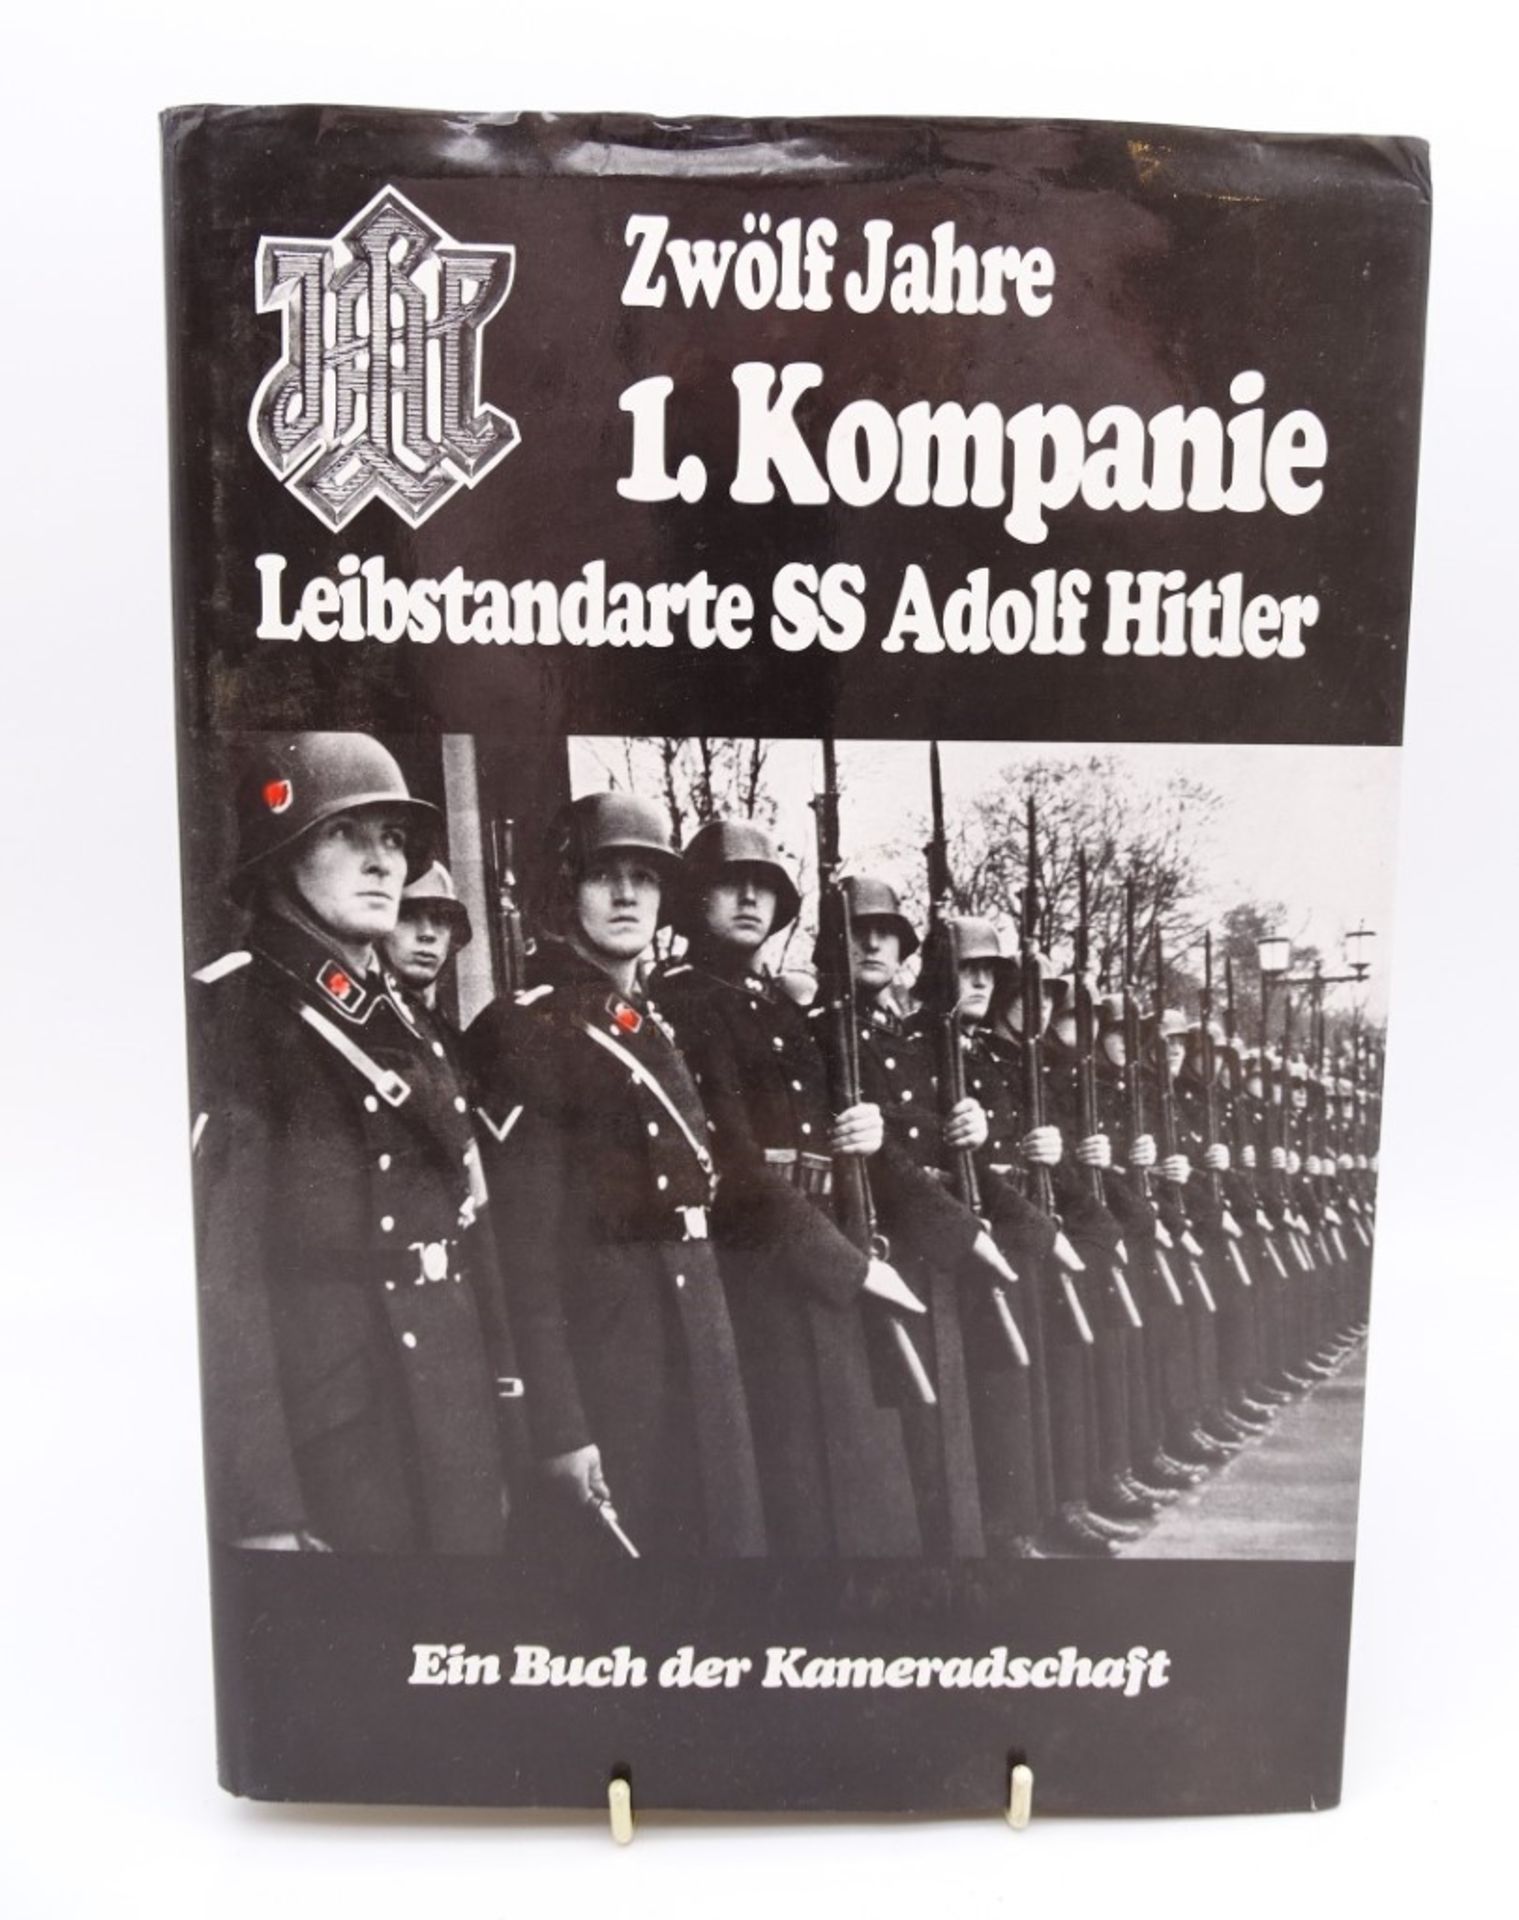 "Zwölf Jahre 1. Kompanie Leibstandarte SS Adolf Hitler", Deutsche Verlagsgesellschaft, Rosenheim 19